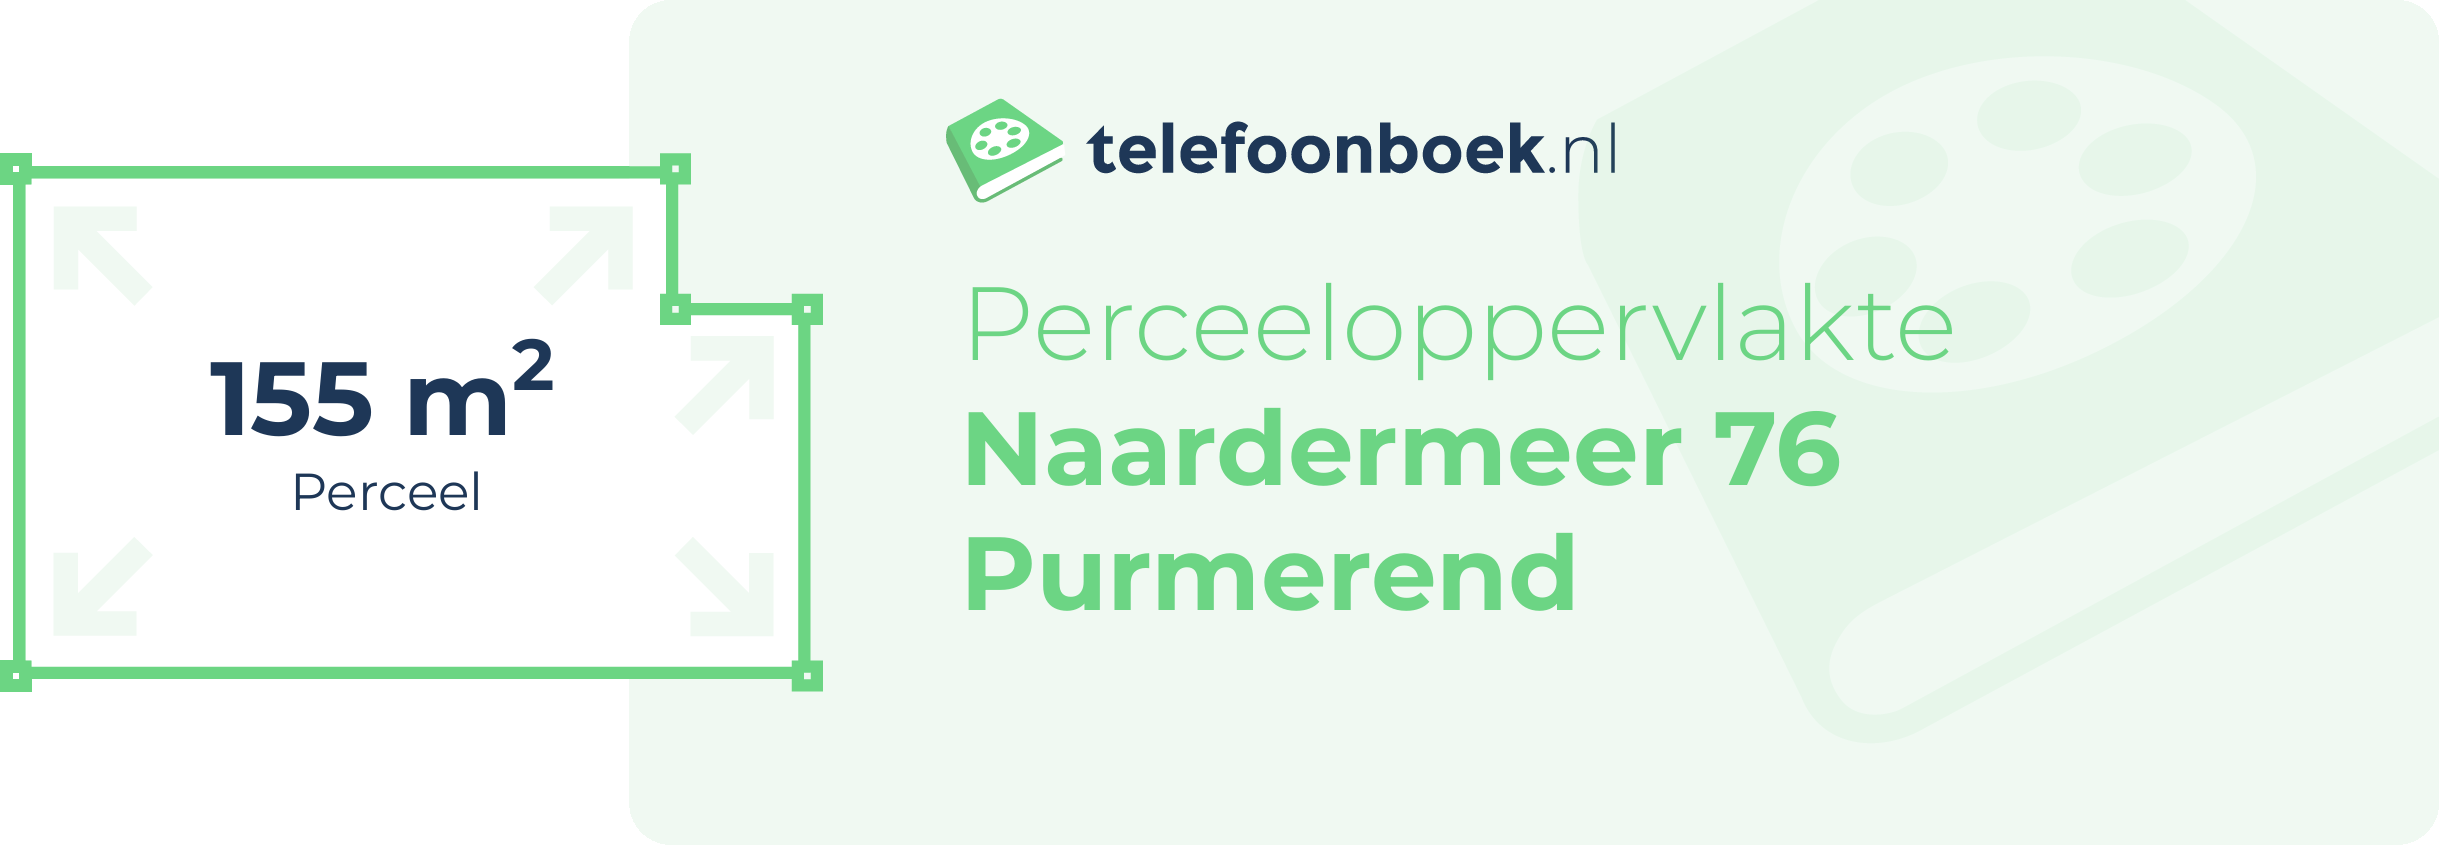 Perceeloppervlakte Naardermeer 76 Purmerend